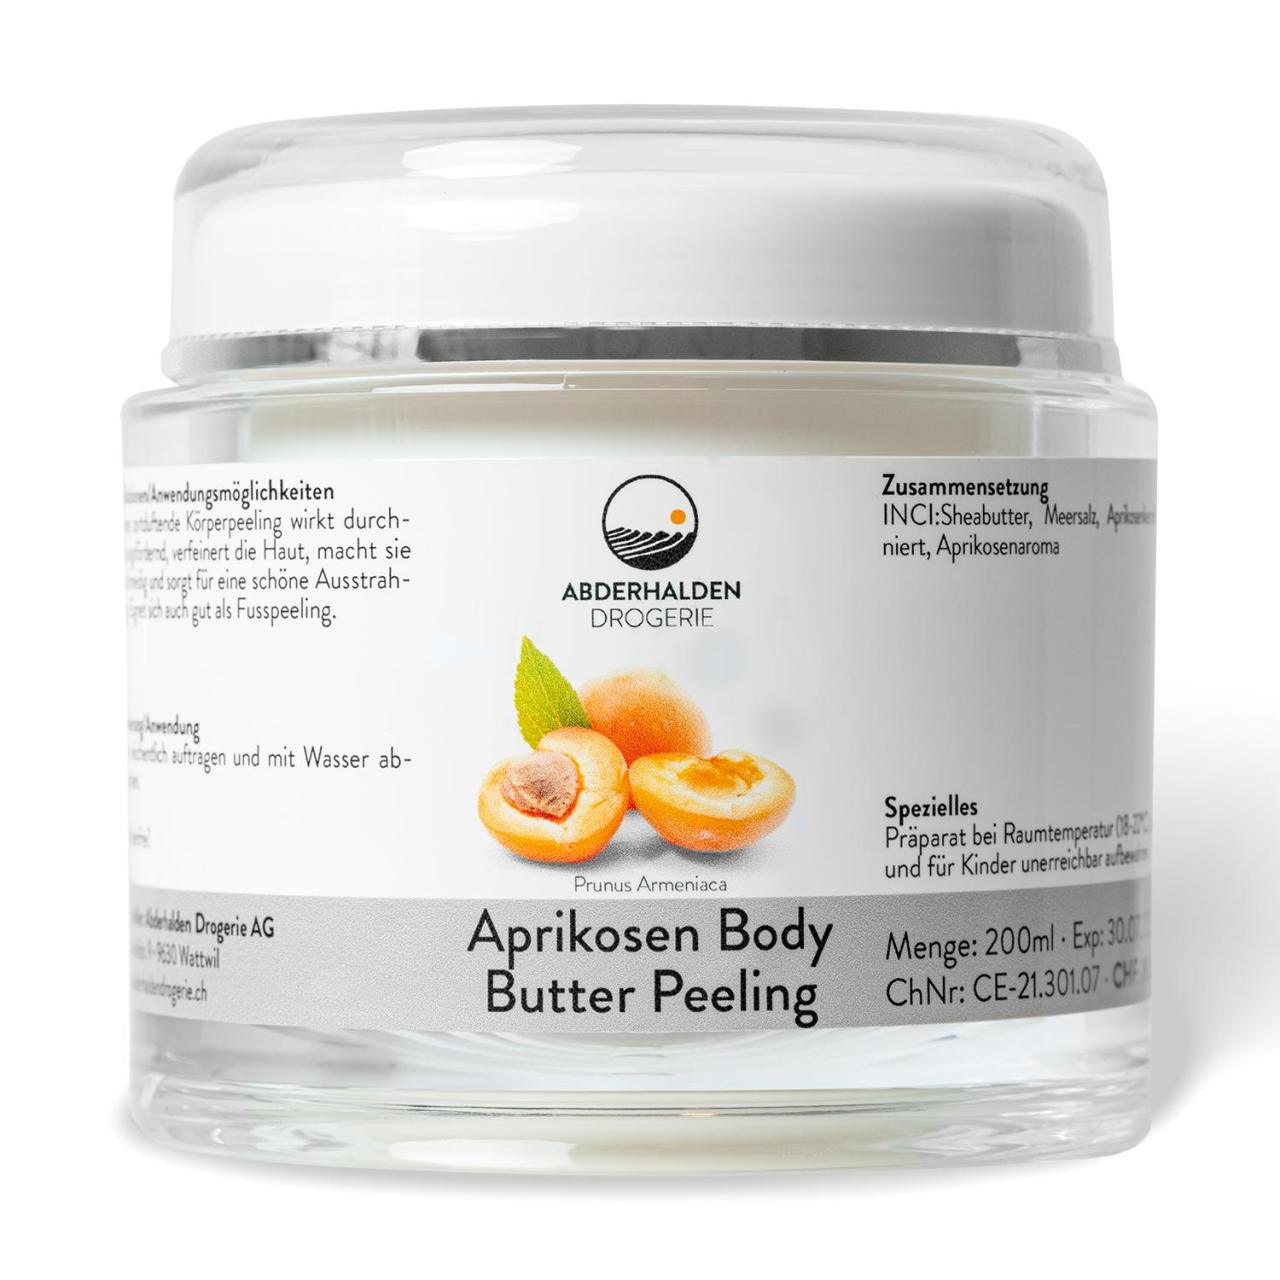 Aprikosen Body Butter Peeling